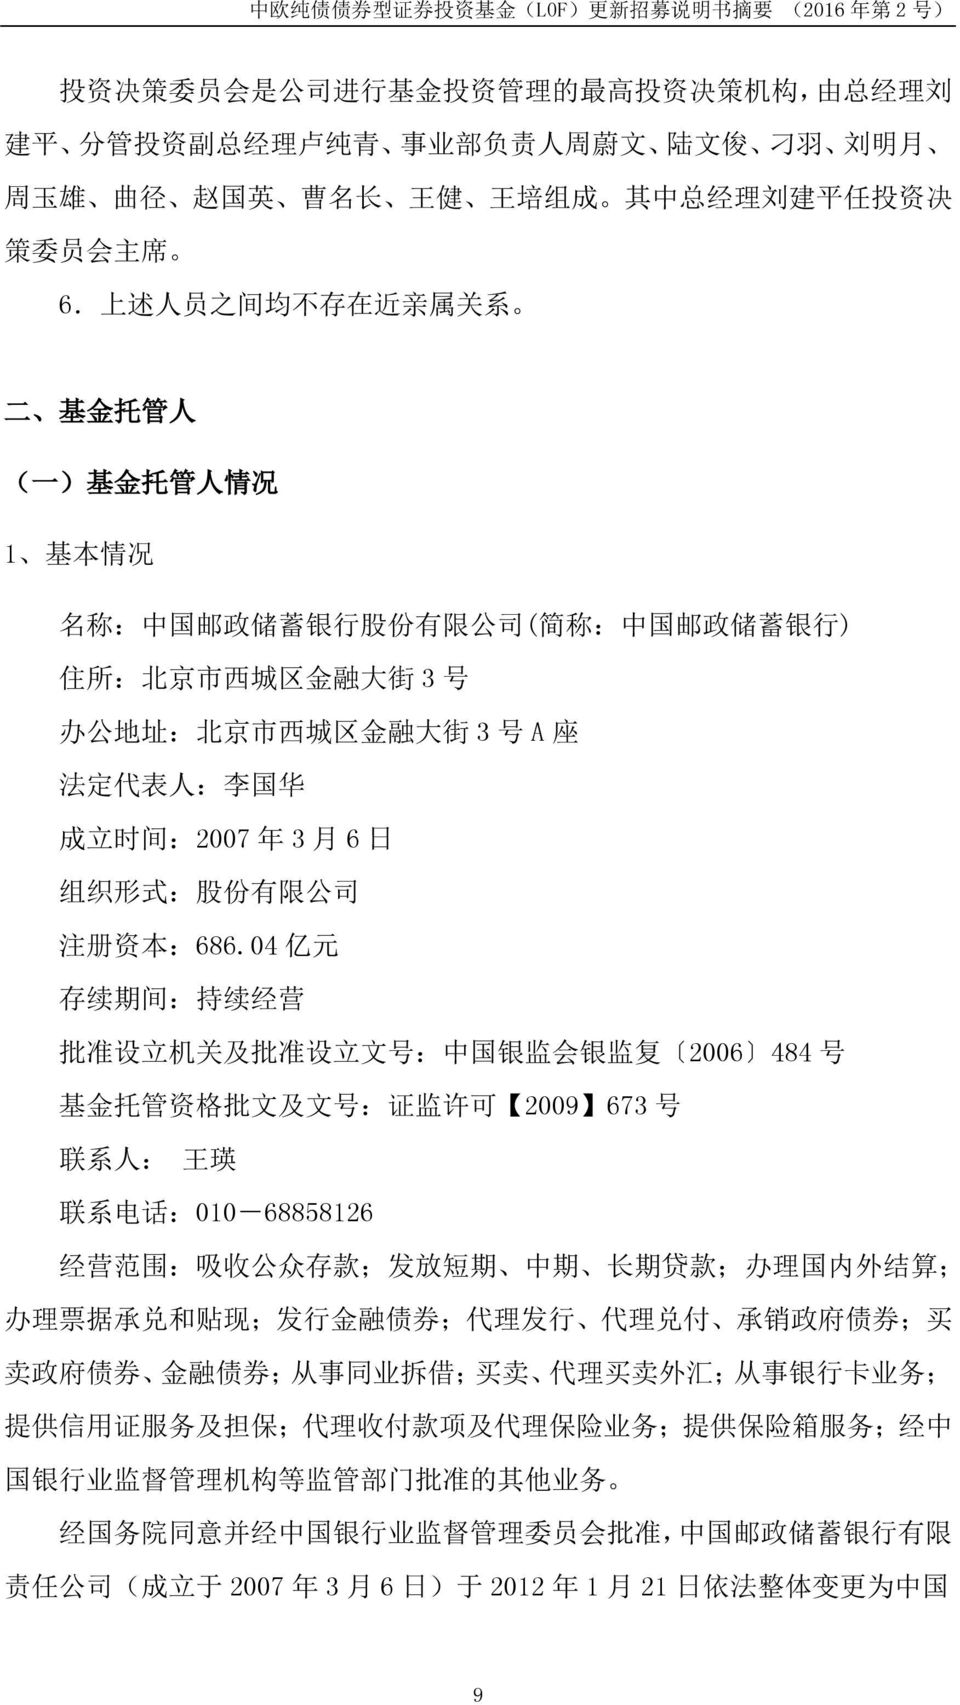 法 定 代 表 人 : 李 国 华 成 立 时 间 :2007 年 3 月 6 日 组 织 形 式 : 股 份 有 限 公 司 注 册 资 本 :686.